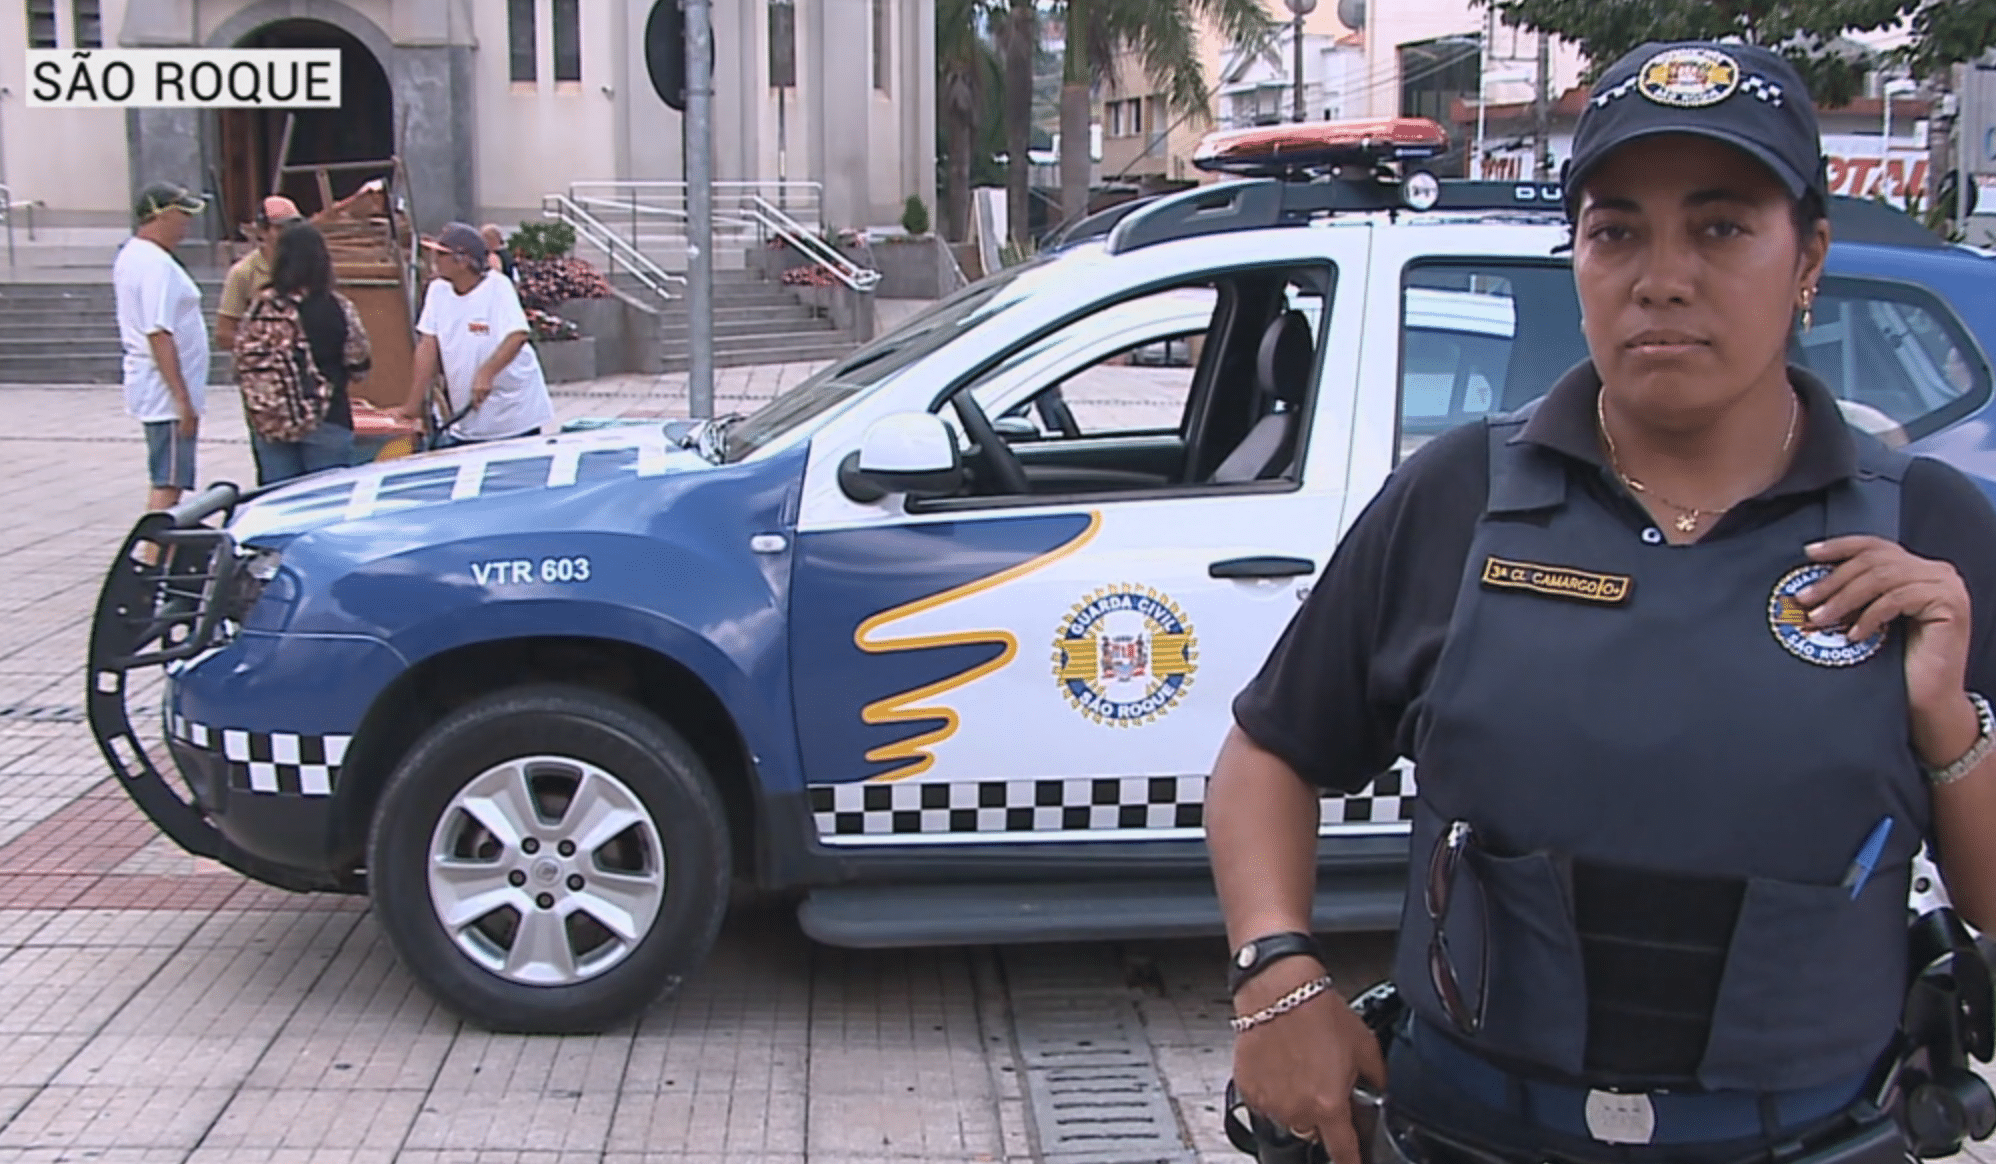 Novos guardas municipais poderão usar armas de fogo em São Roque